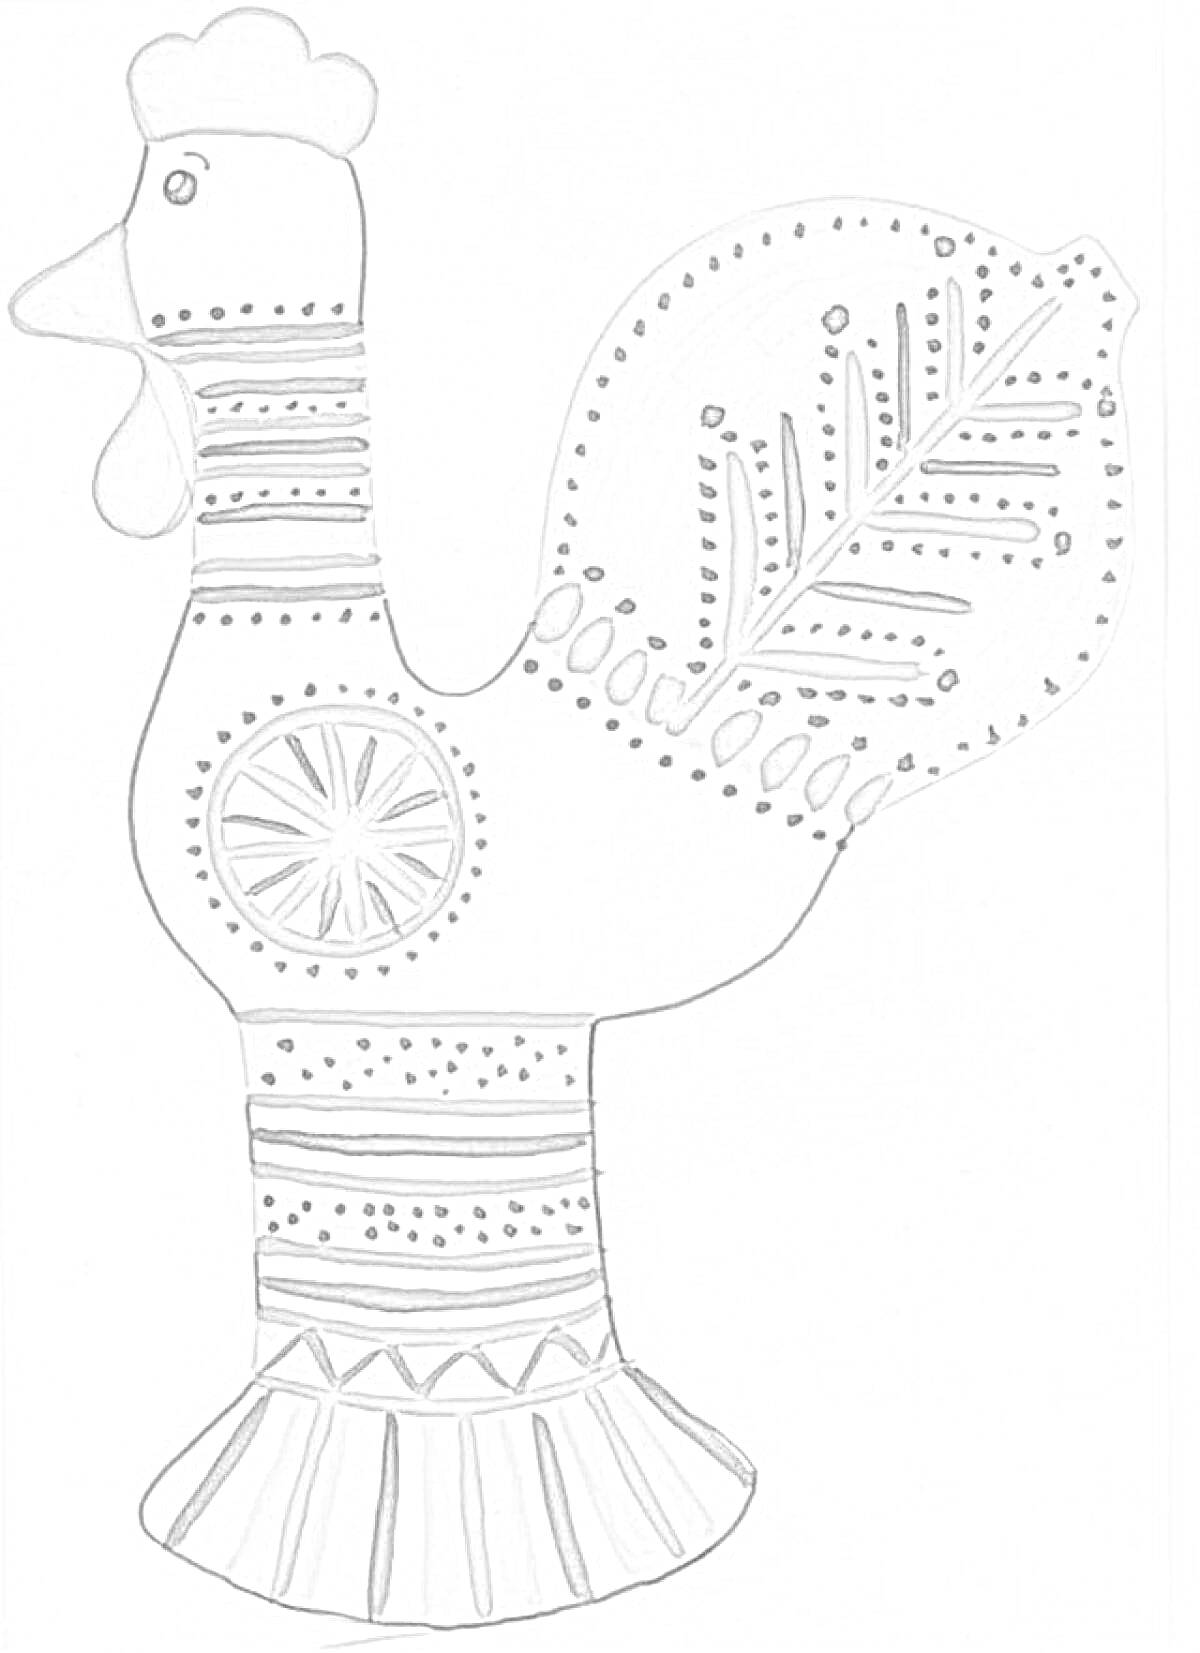 Раскраска Фигурка птицы с филимоновской росписью, украшенная орнаментами: точками, линиями, кругами и узором в виде листка